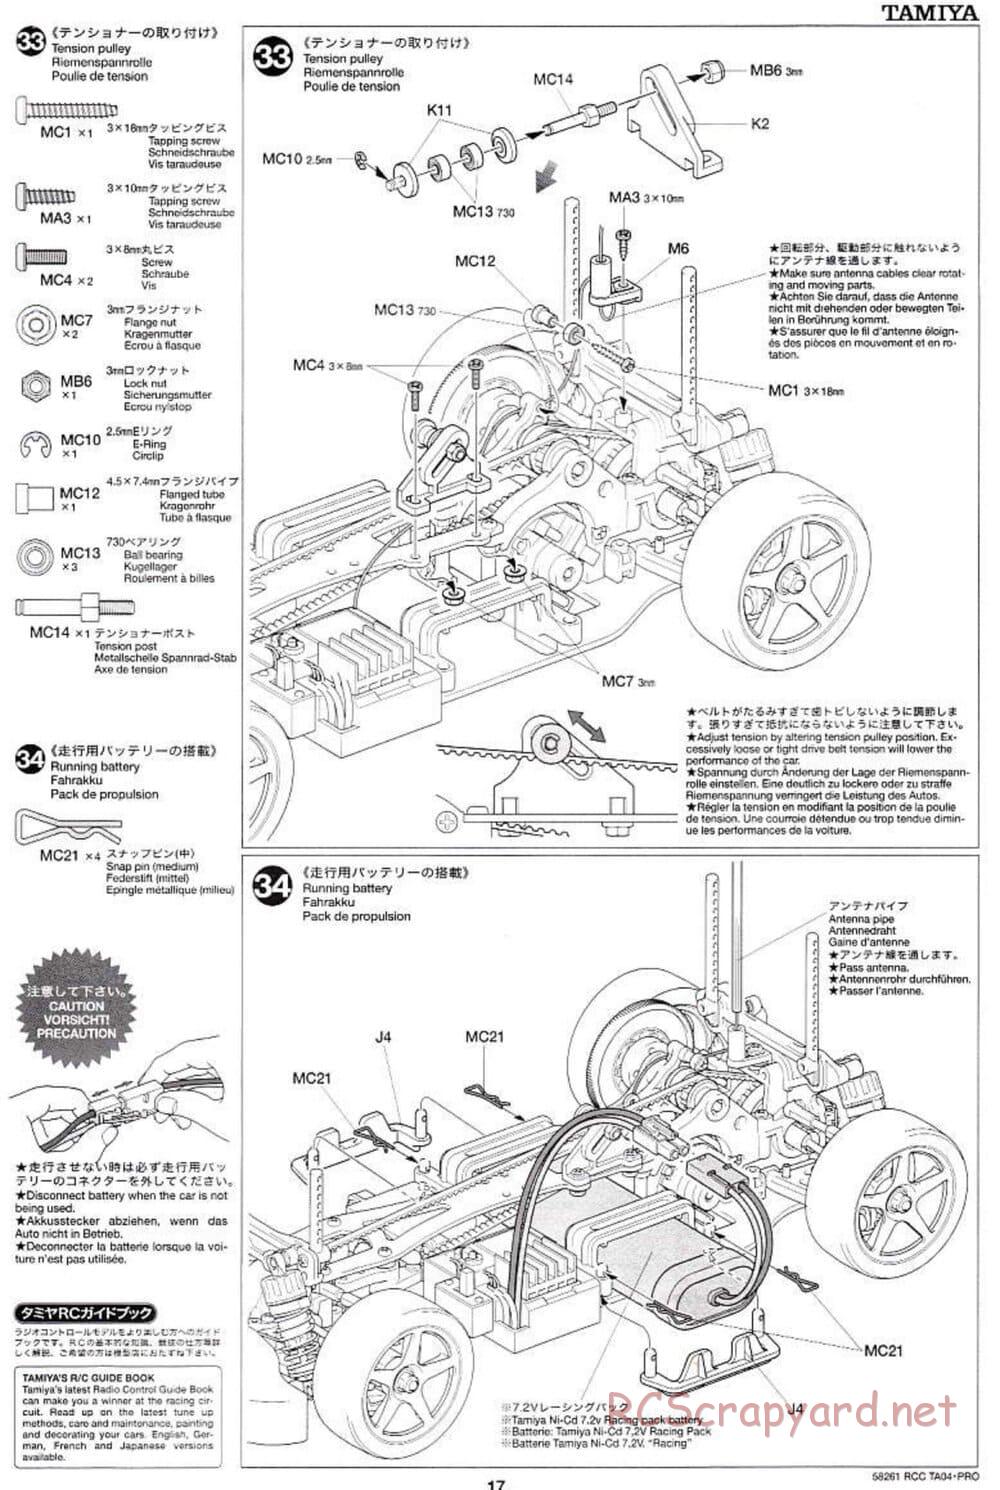 Tamiya - TA-04 Pro Chassis - Manual - Page 17